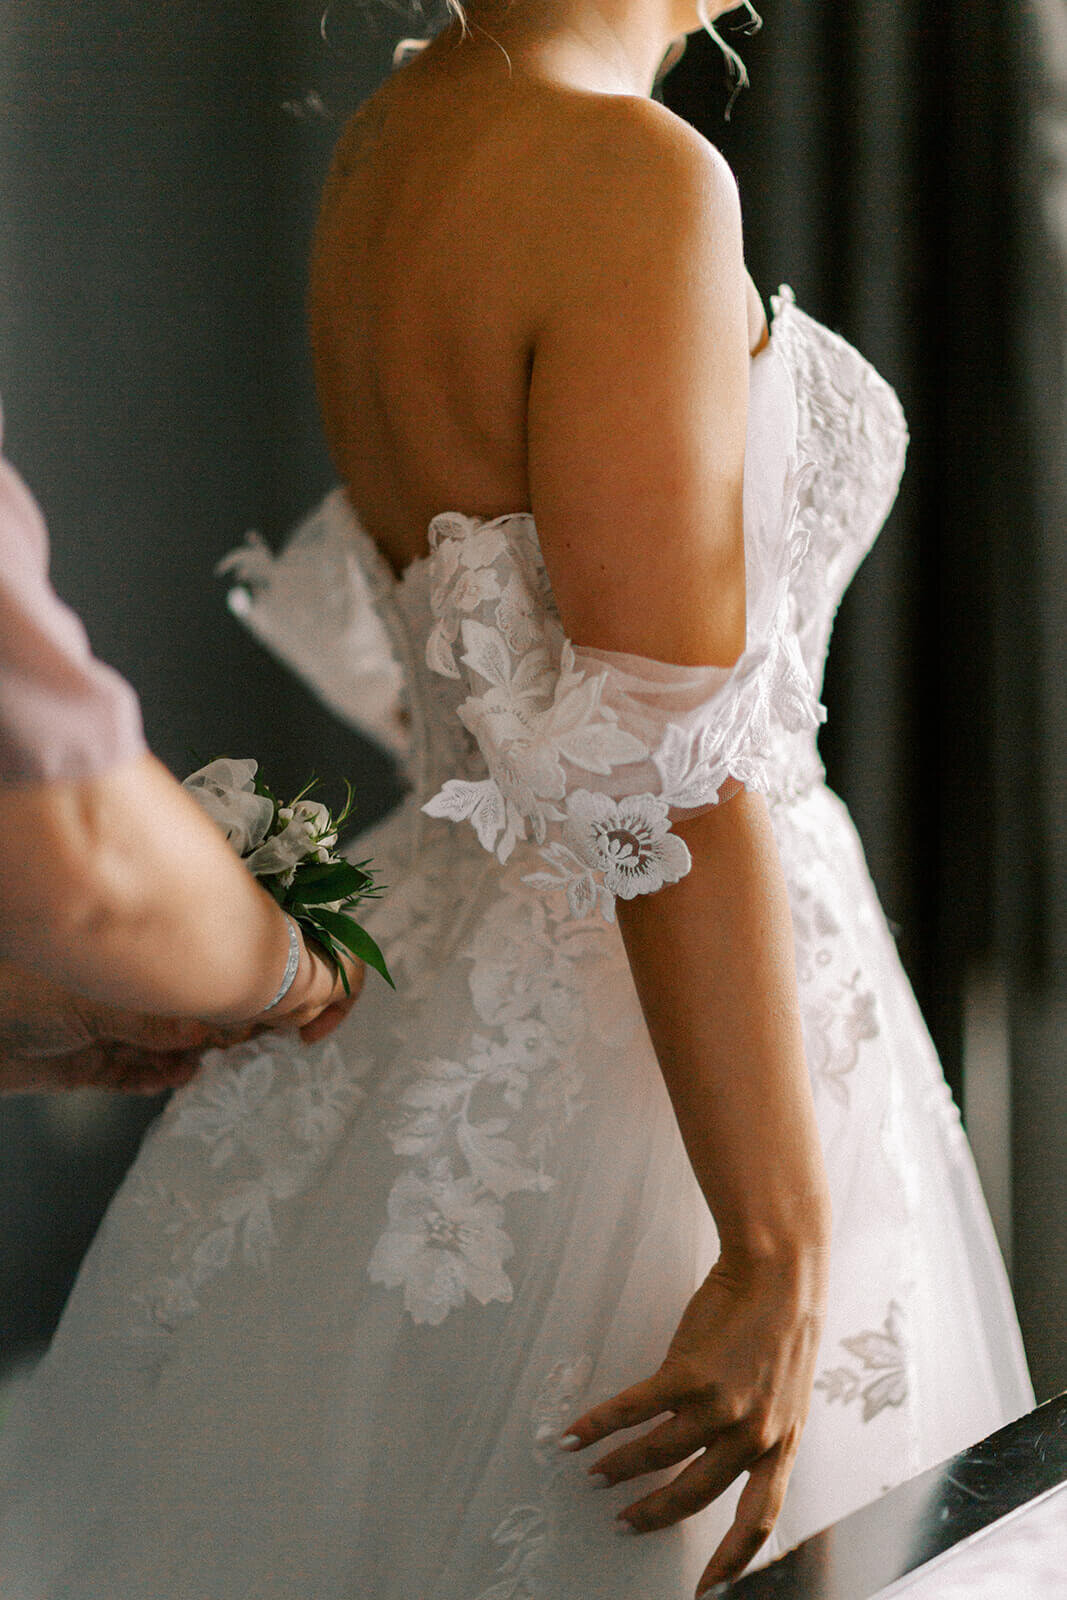 bride-getting-ready-Alyssa-Marie-Photography-wedding-day-Cape-Breton